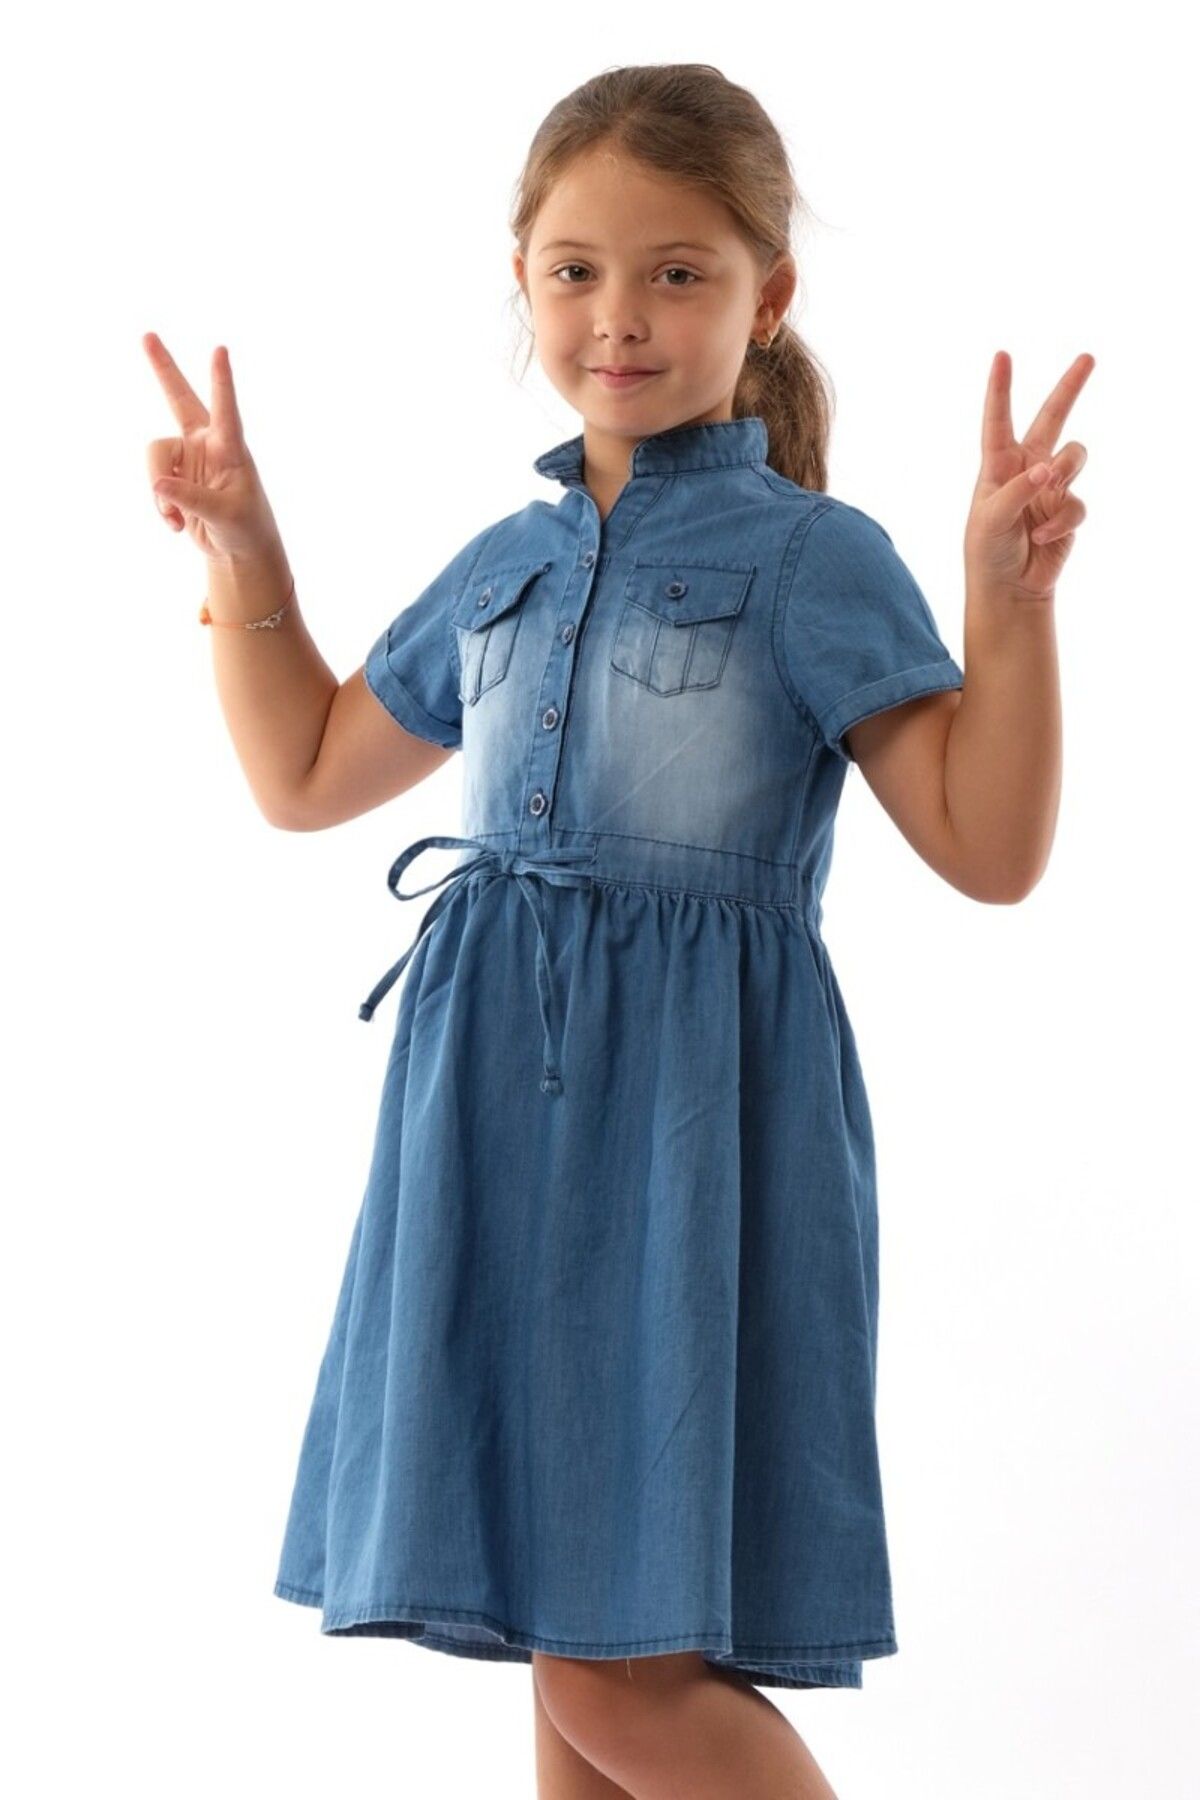 DIDuStore Varol Kids Kız Çocuk İçin Şık Denim Elbise